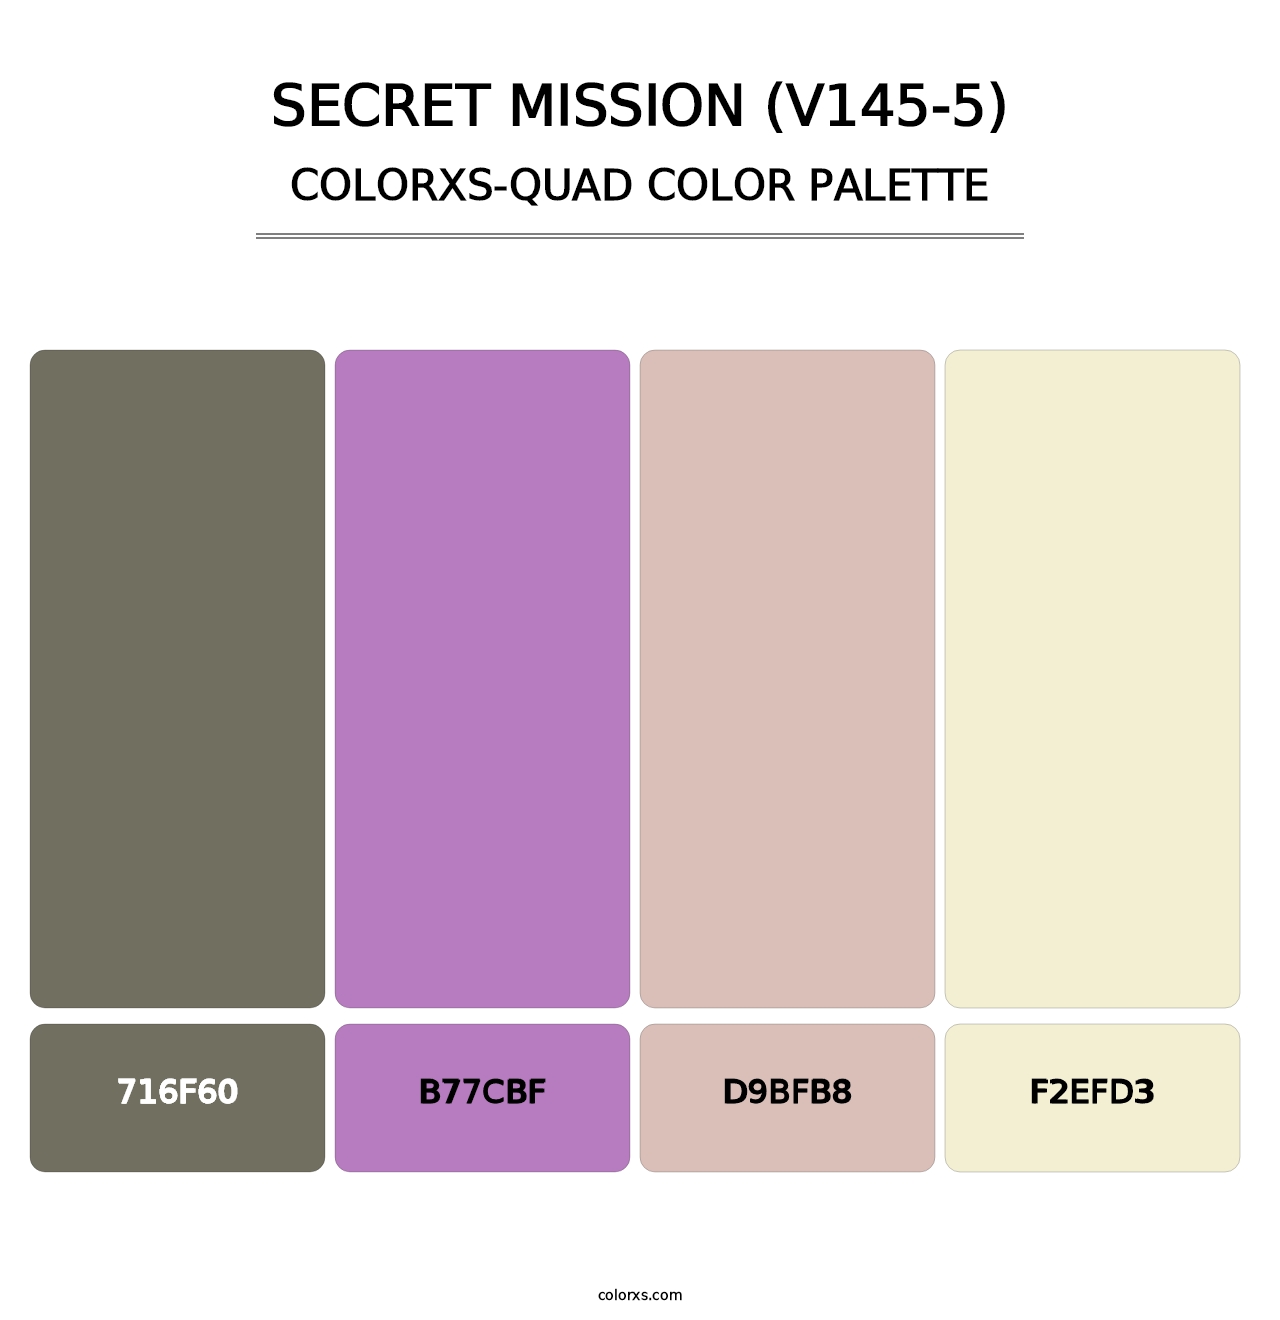 Secret Mission (V145-5) - Colorxs Quad Palette